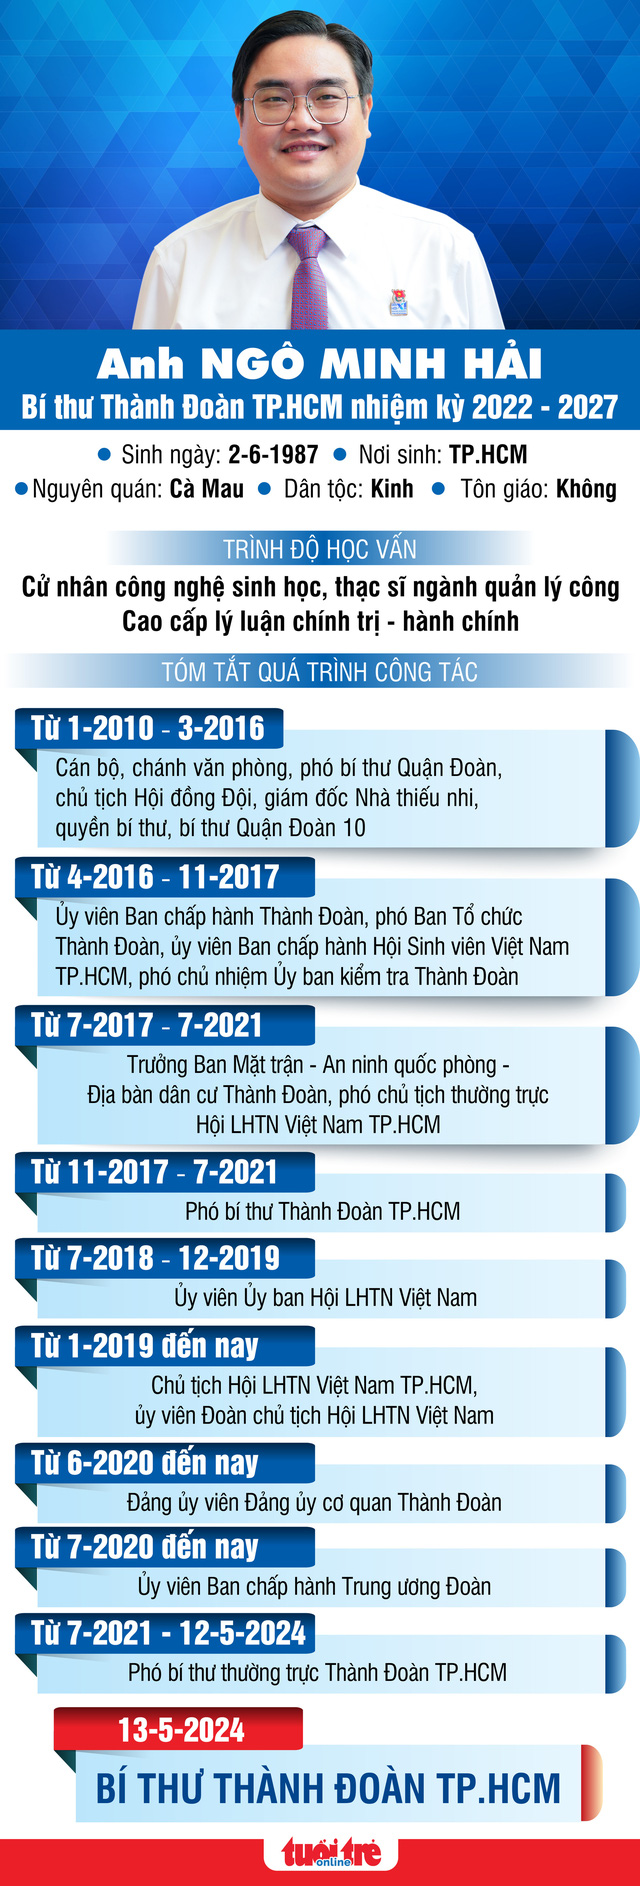 Anh Ngô Minh Hải nhận quyết định công nhận chức vụ bí thư Thành Đoàn TP.HCM- Ảnh 4.